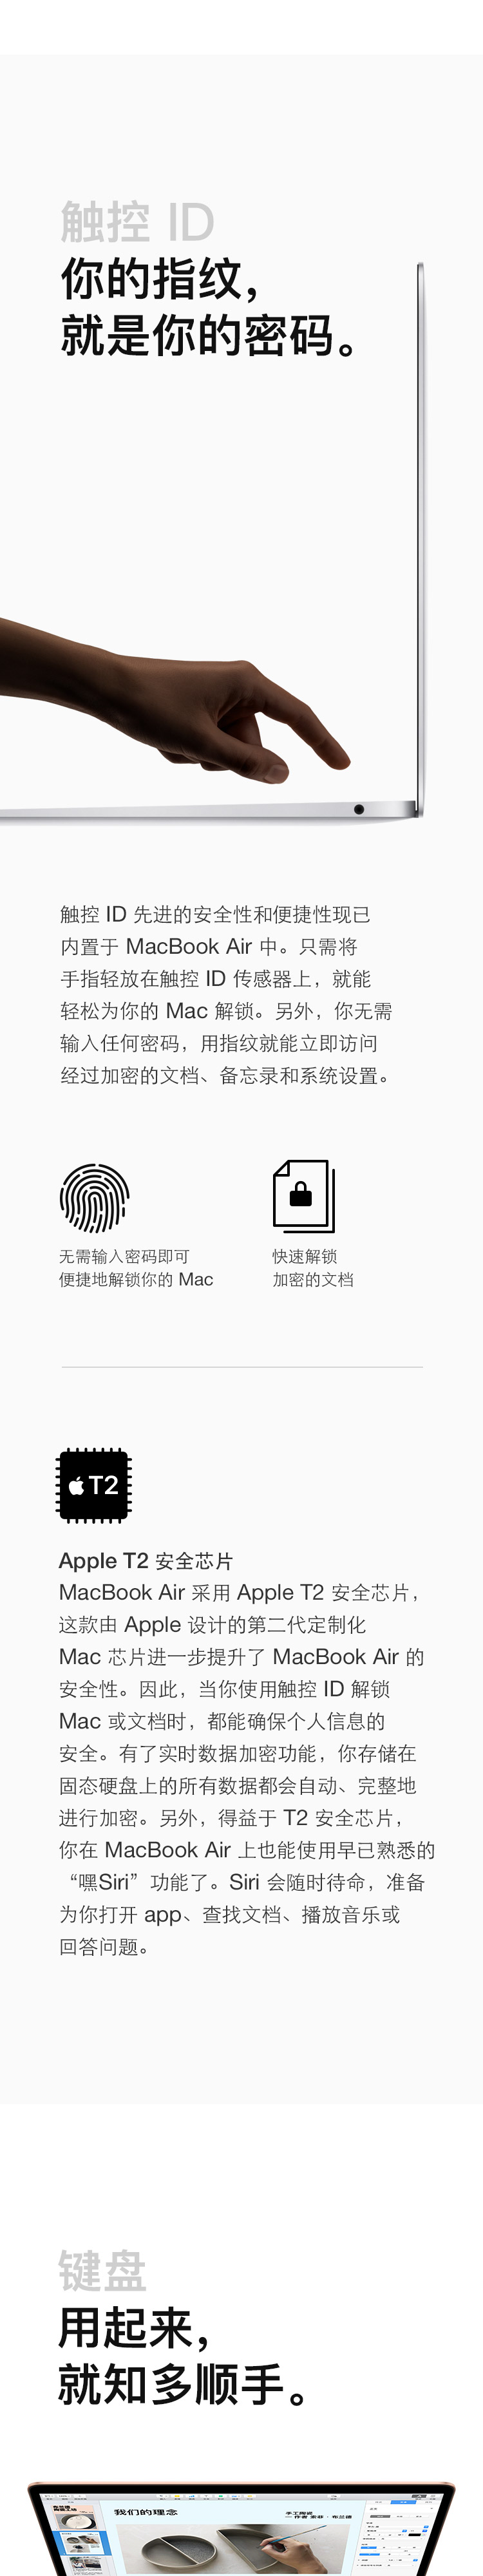 中山手机网 苹果(apple) macbook air 2019手机专卖